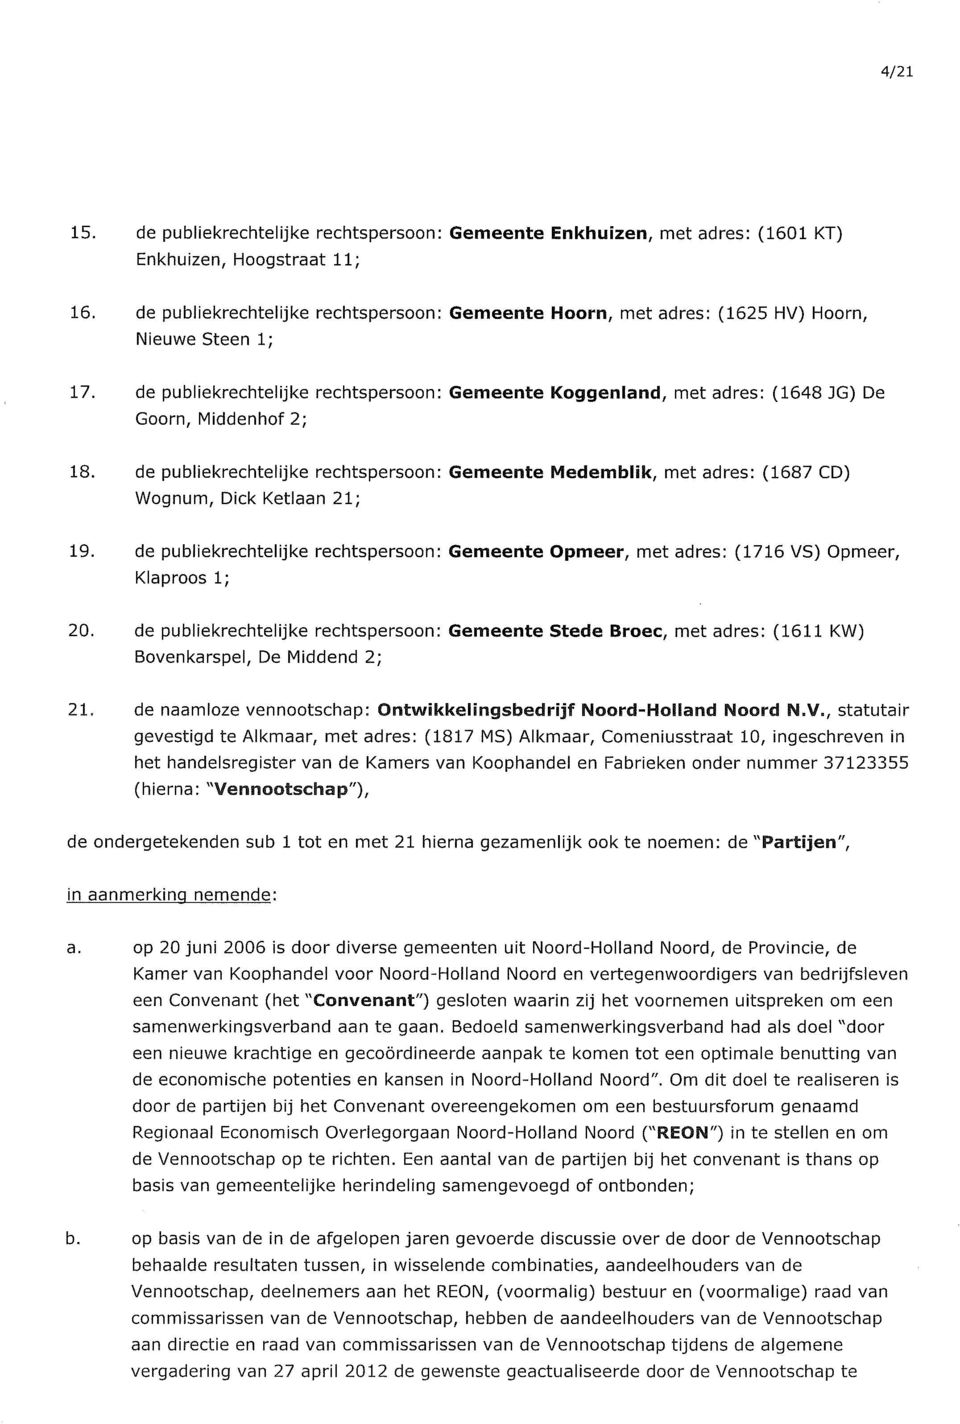 de publiekrechtelijke rechtspersoon: Gemeente Koggenland, met adres: (1648 JG) De Goorn, Middenhof 2; 18.